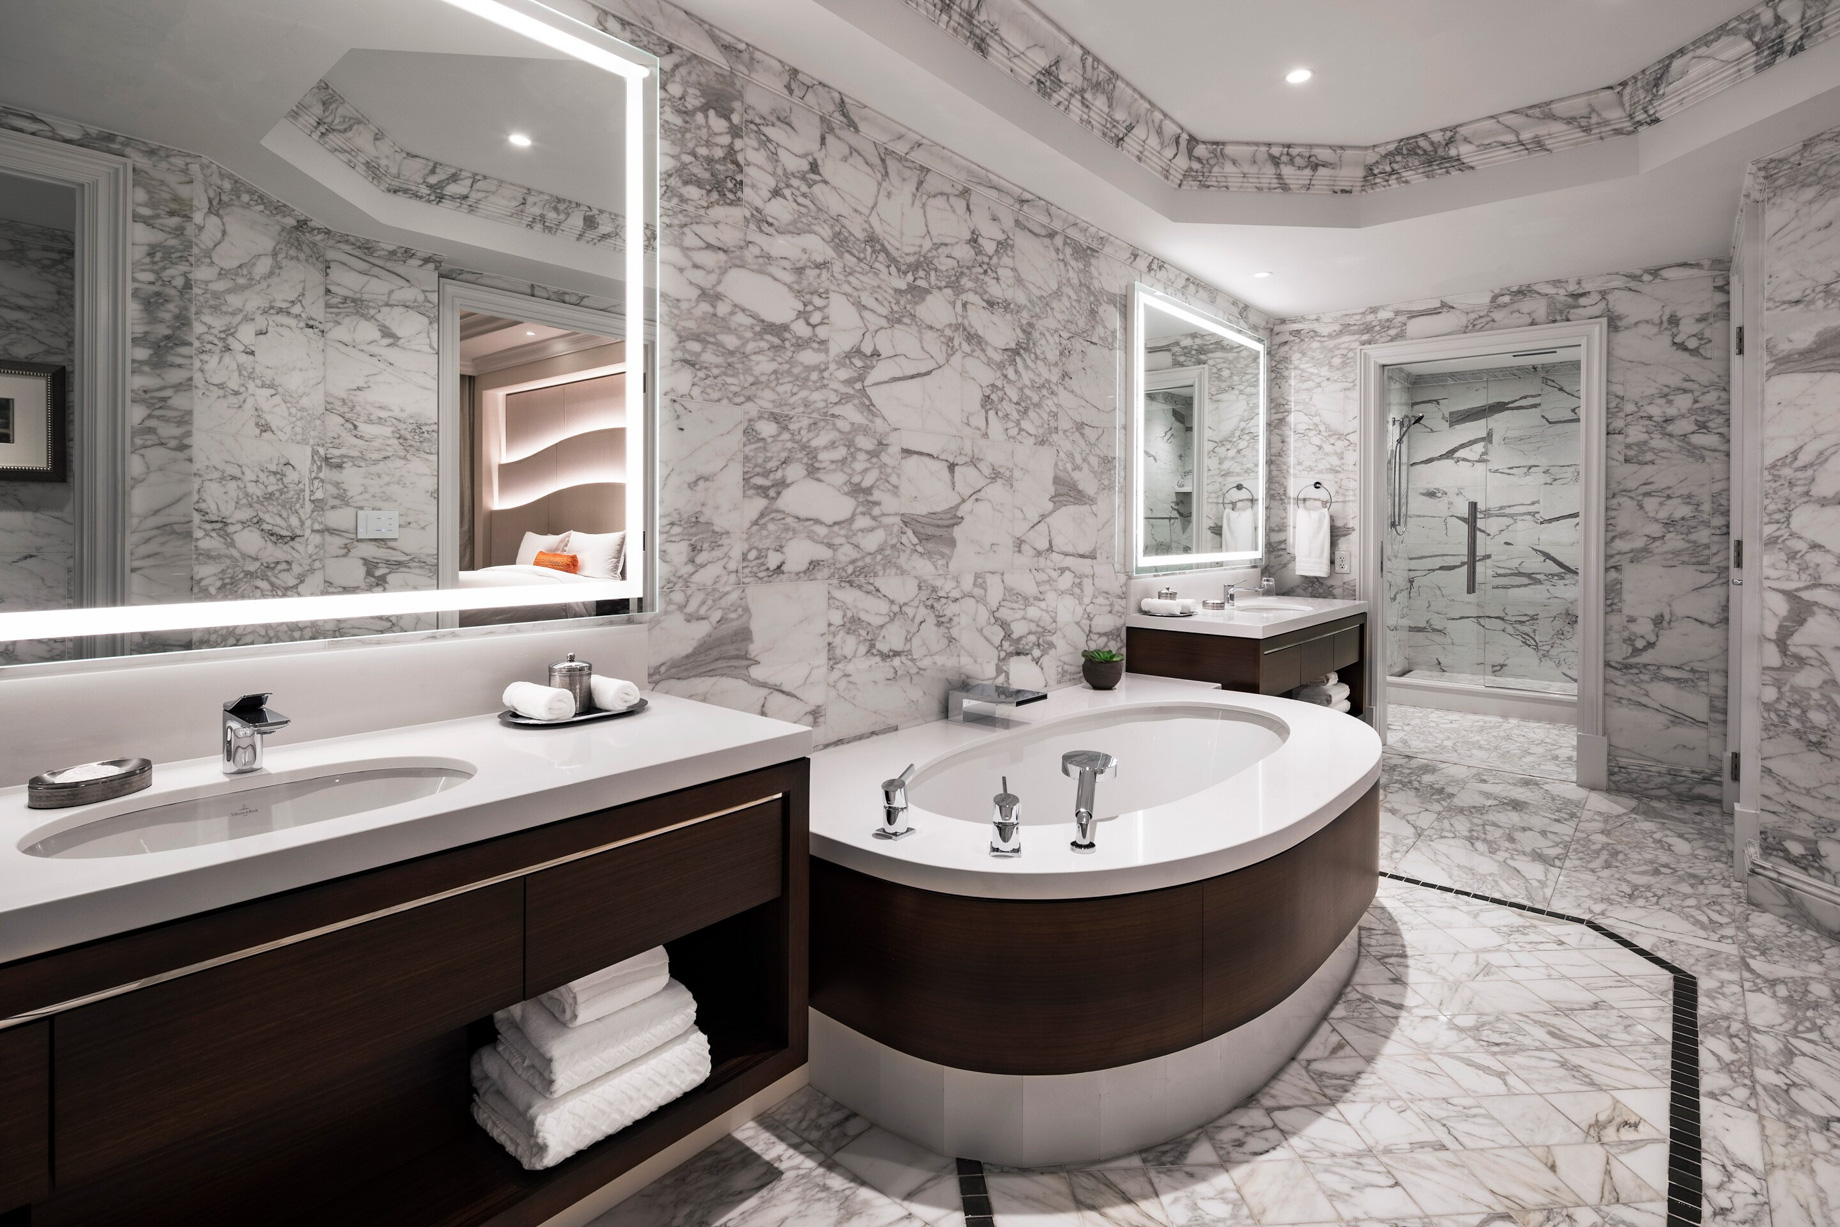 The St. Regis Atlanta Hotel – Atlanta, GA, USA – Empire Suite Bathroom Vanity and Tub